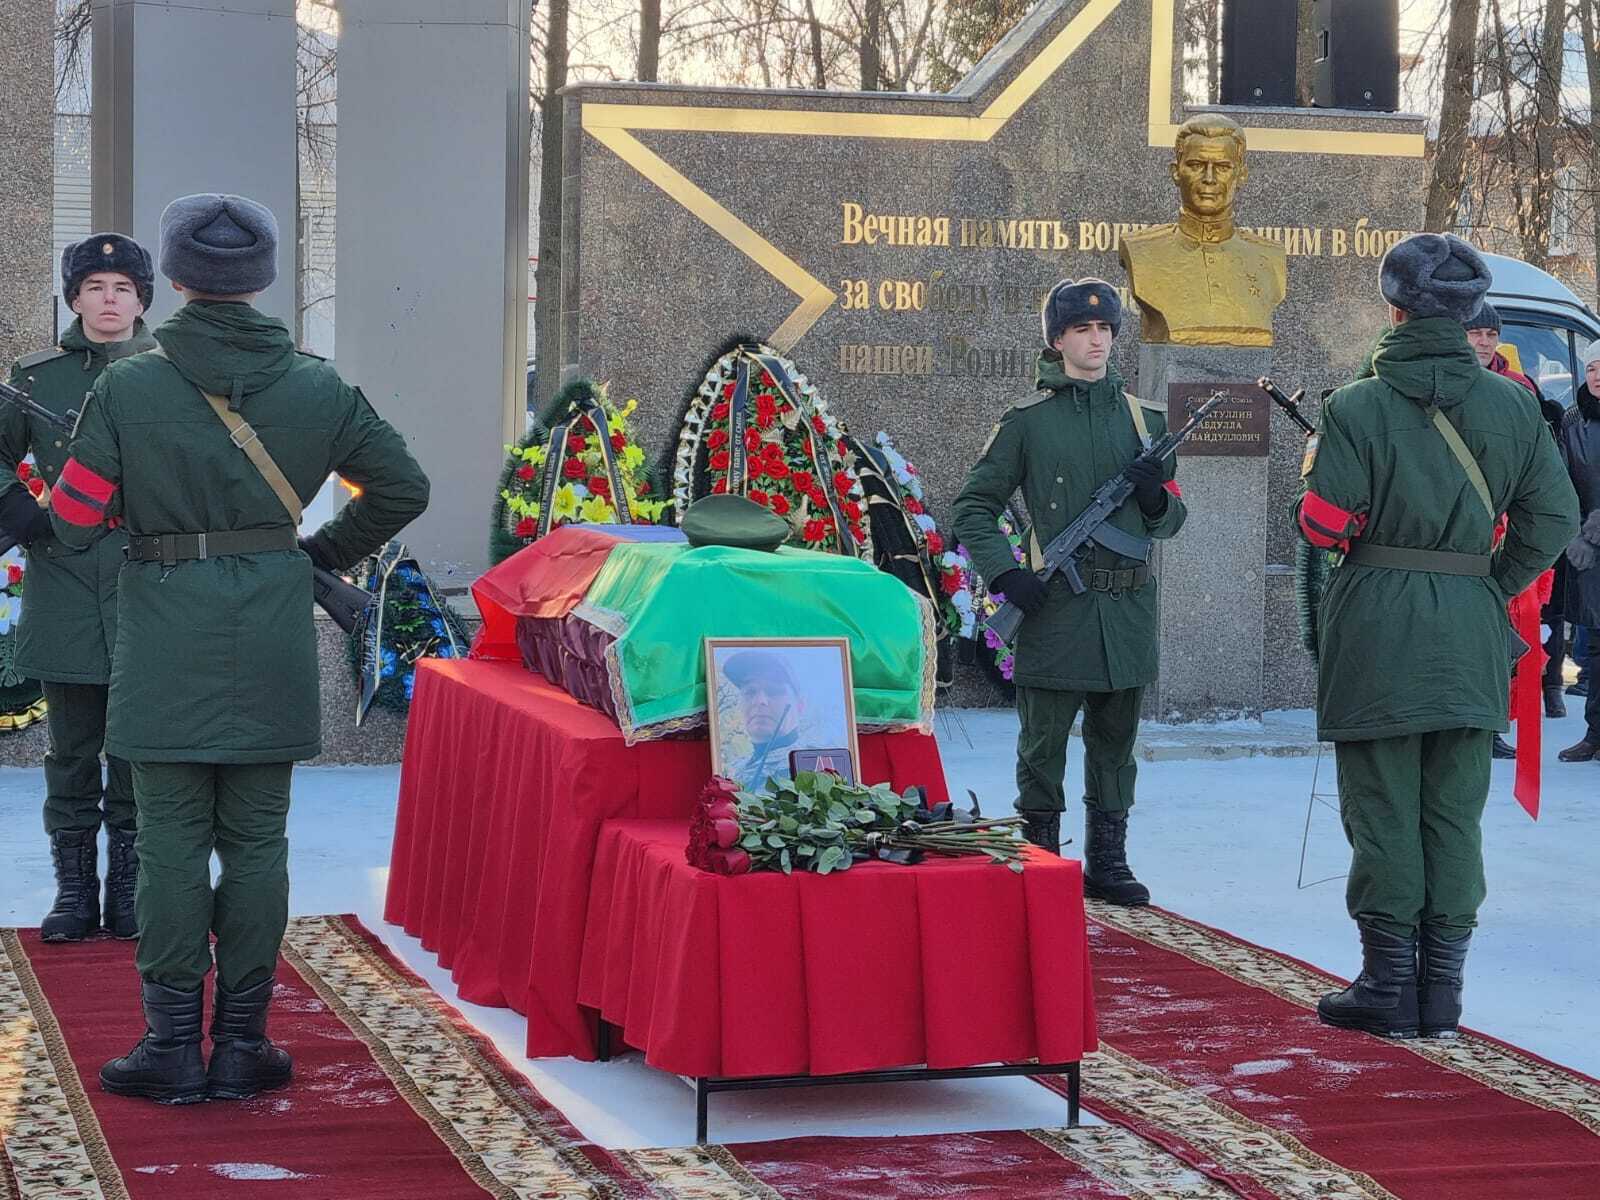 Сегодня чишминцы простились с капитаном Русланом Ибрагимовым, погибшим в ходе спецоперации в Украине